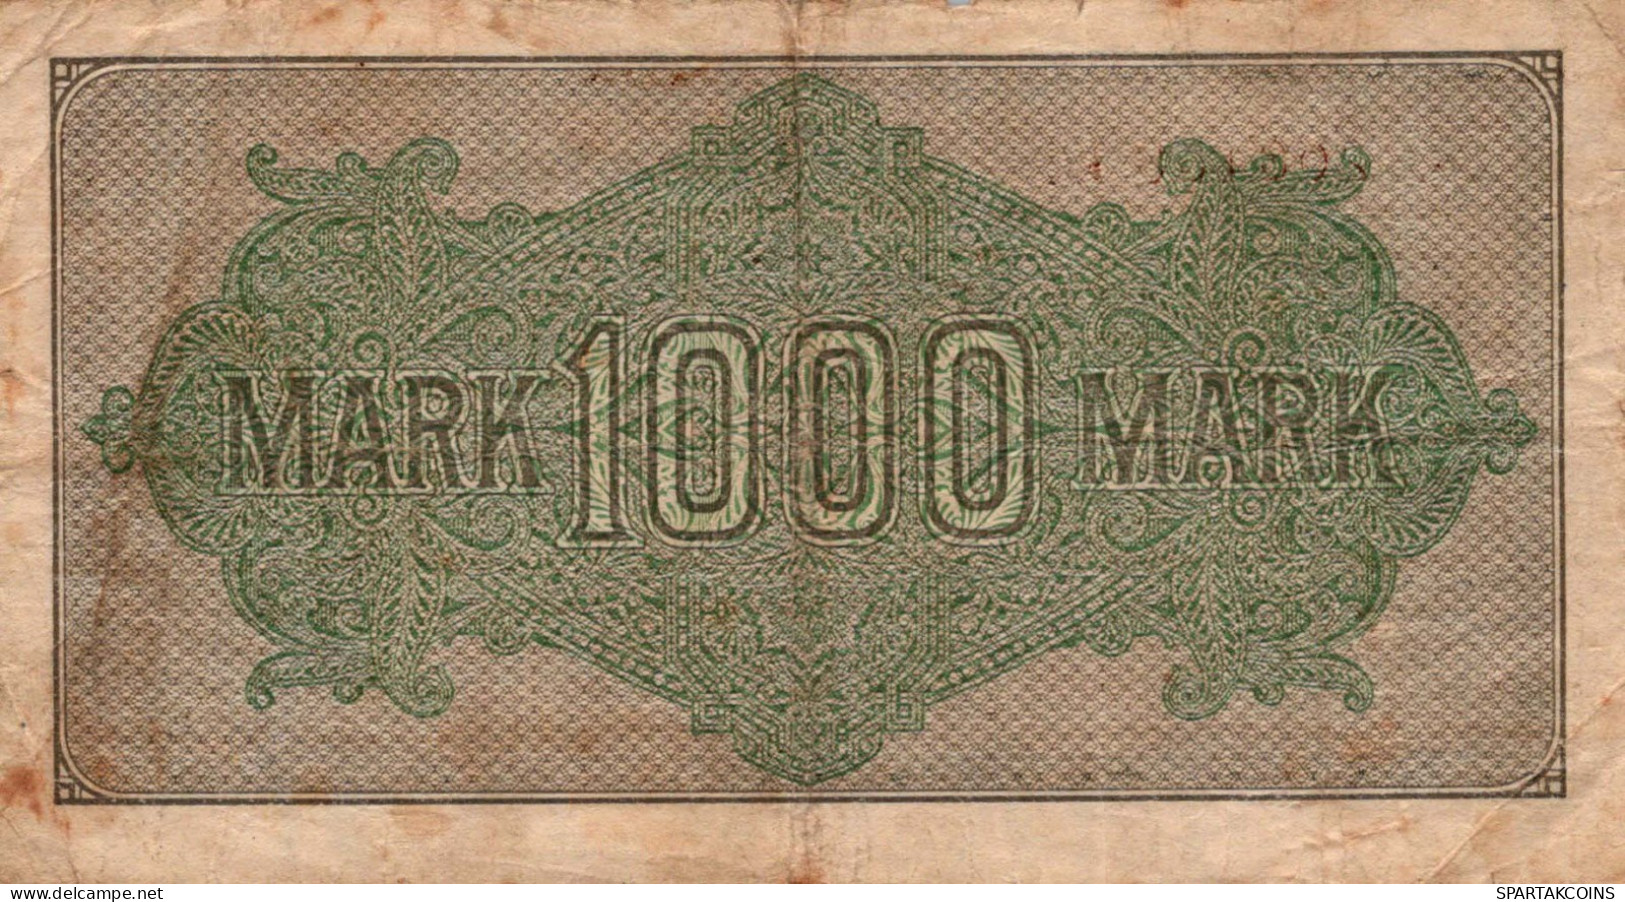 1000 MARK 1922 Stadt BERLIN DEUTSCHLAND Papiergeld Banknote #PL021 - [11] Local Banknote Issues